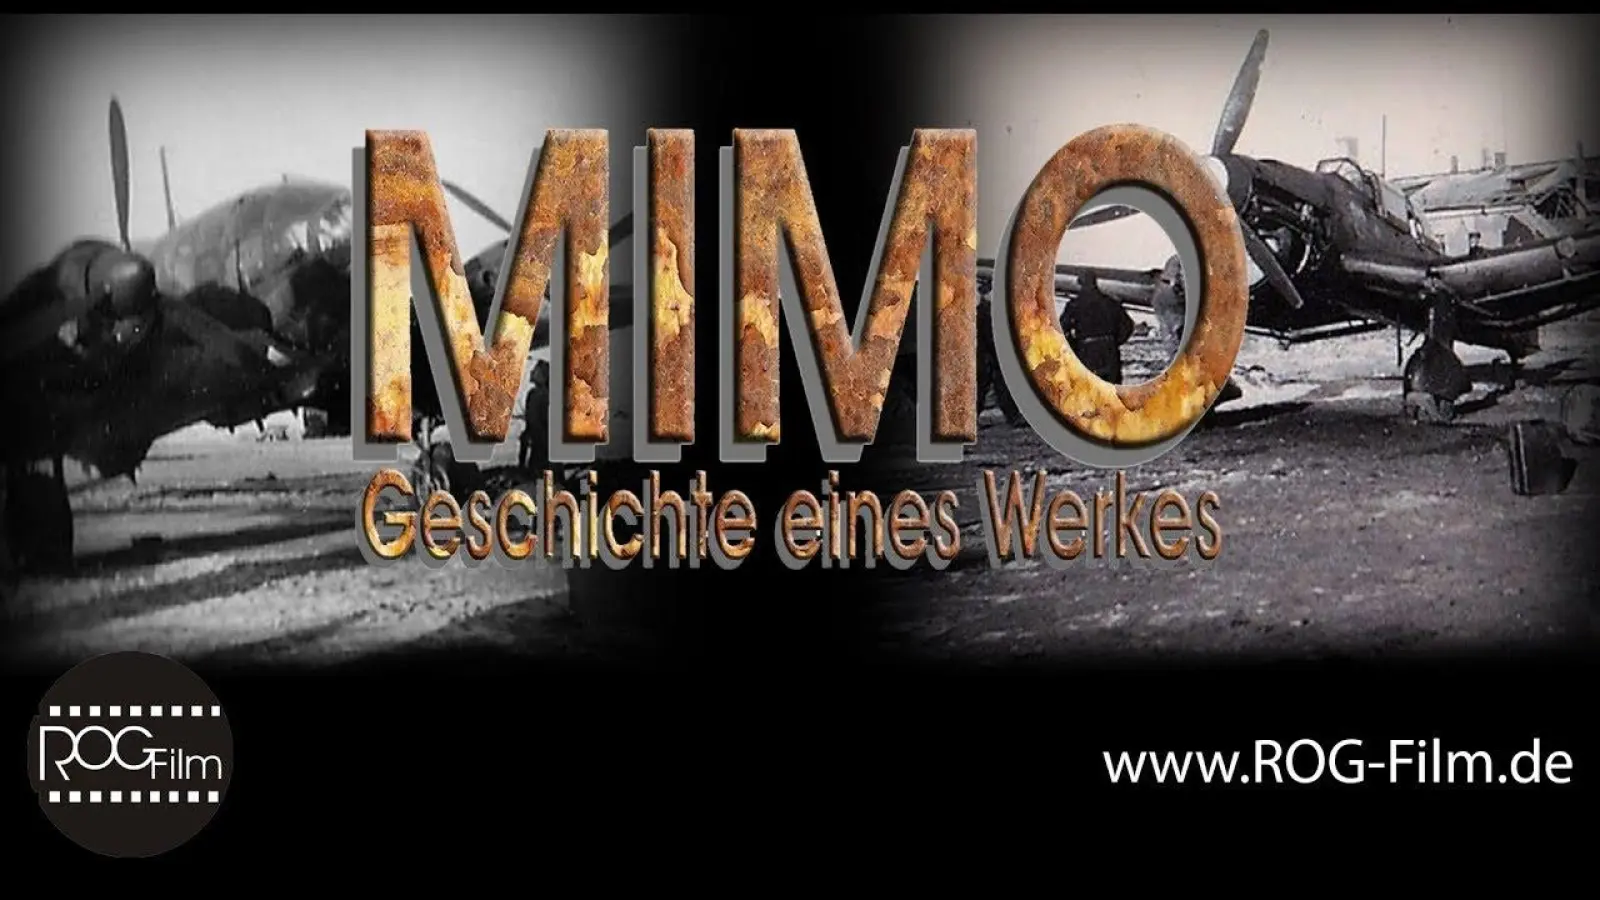 Film über die Mimo ist fertig, Crowdfunding beginnt demnächst (Foto: taucha-kompakt.de)